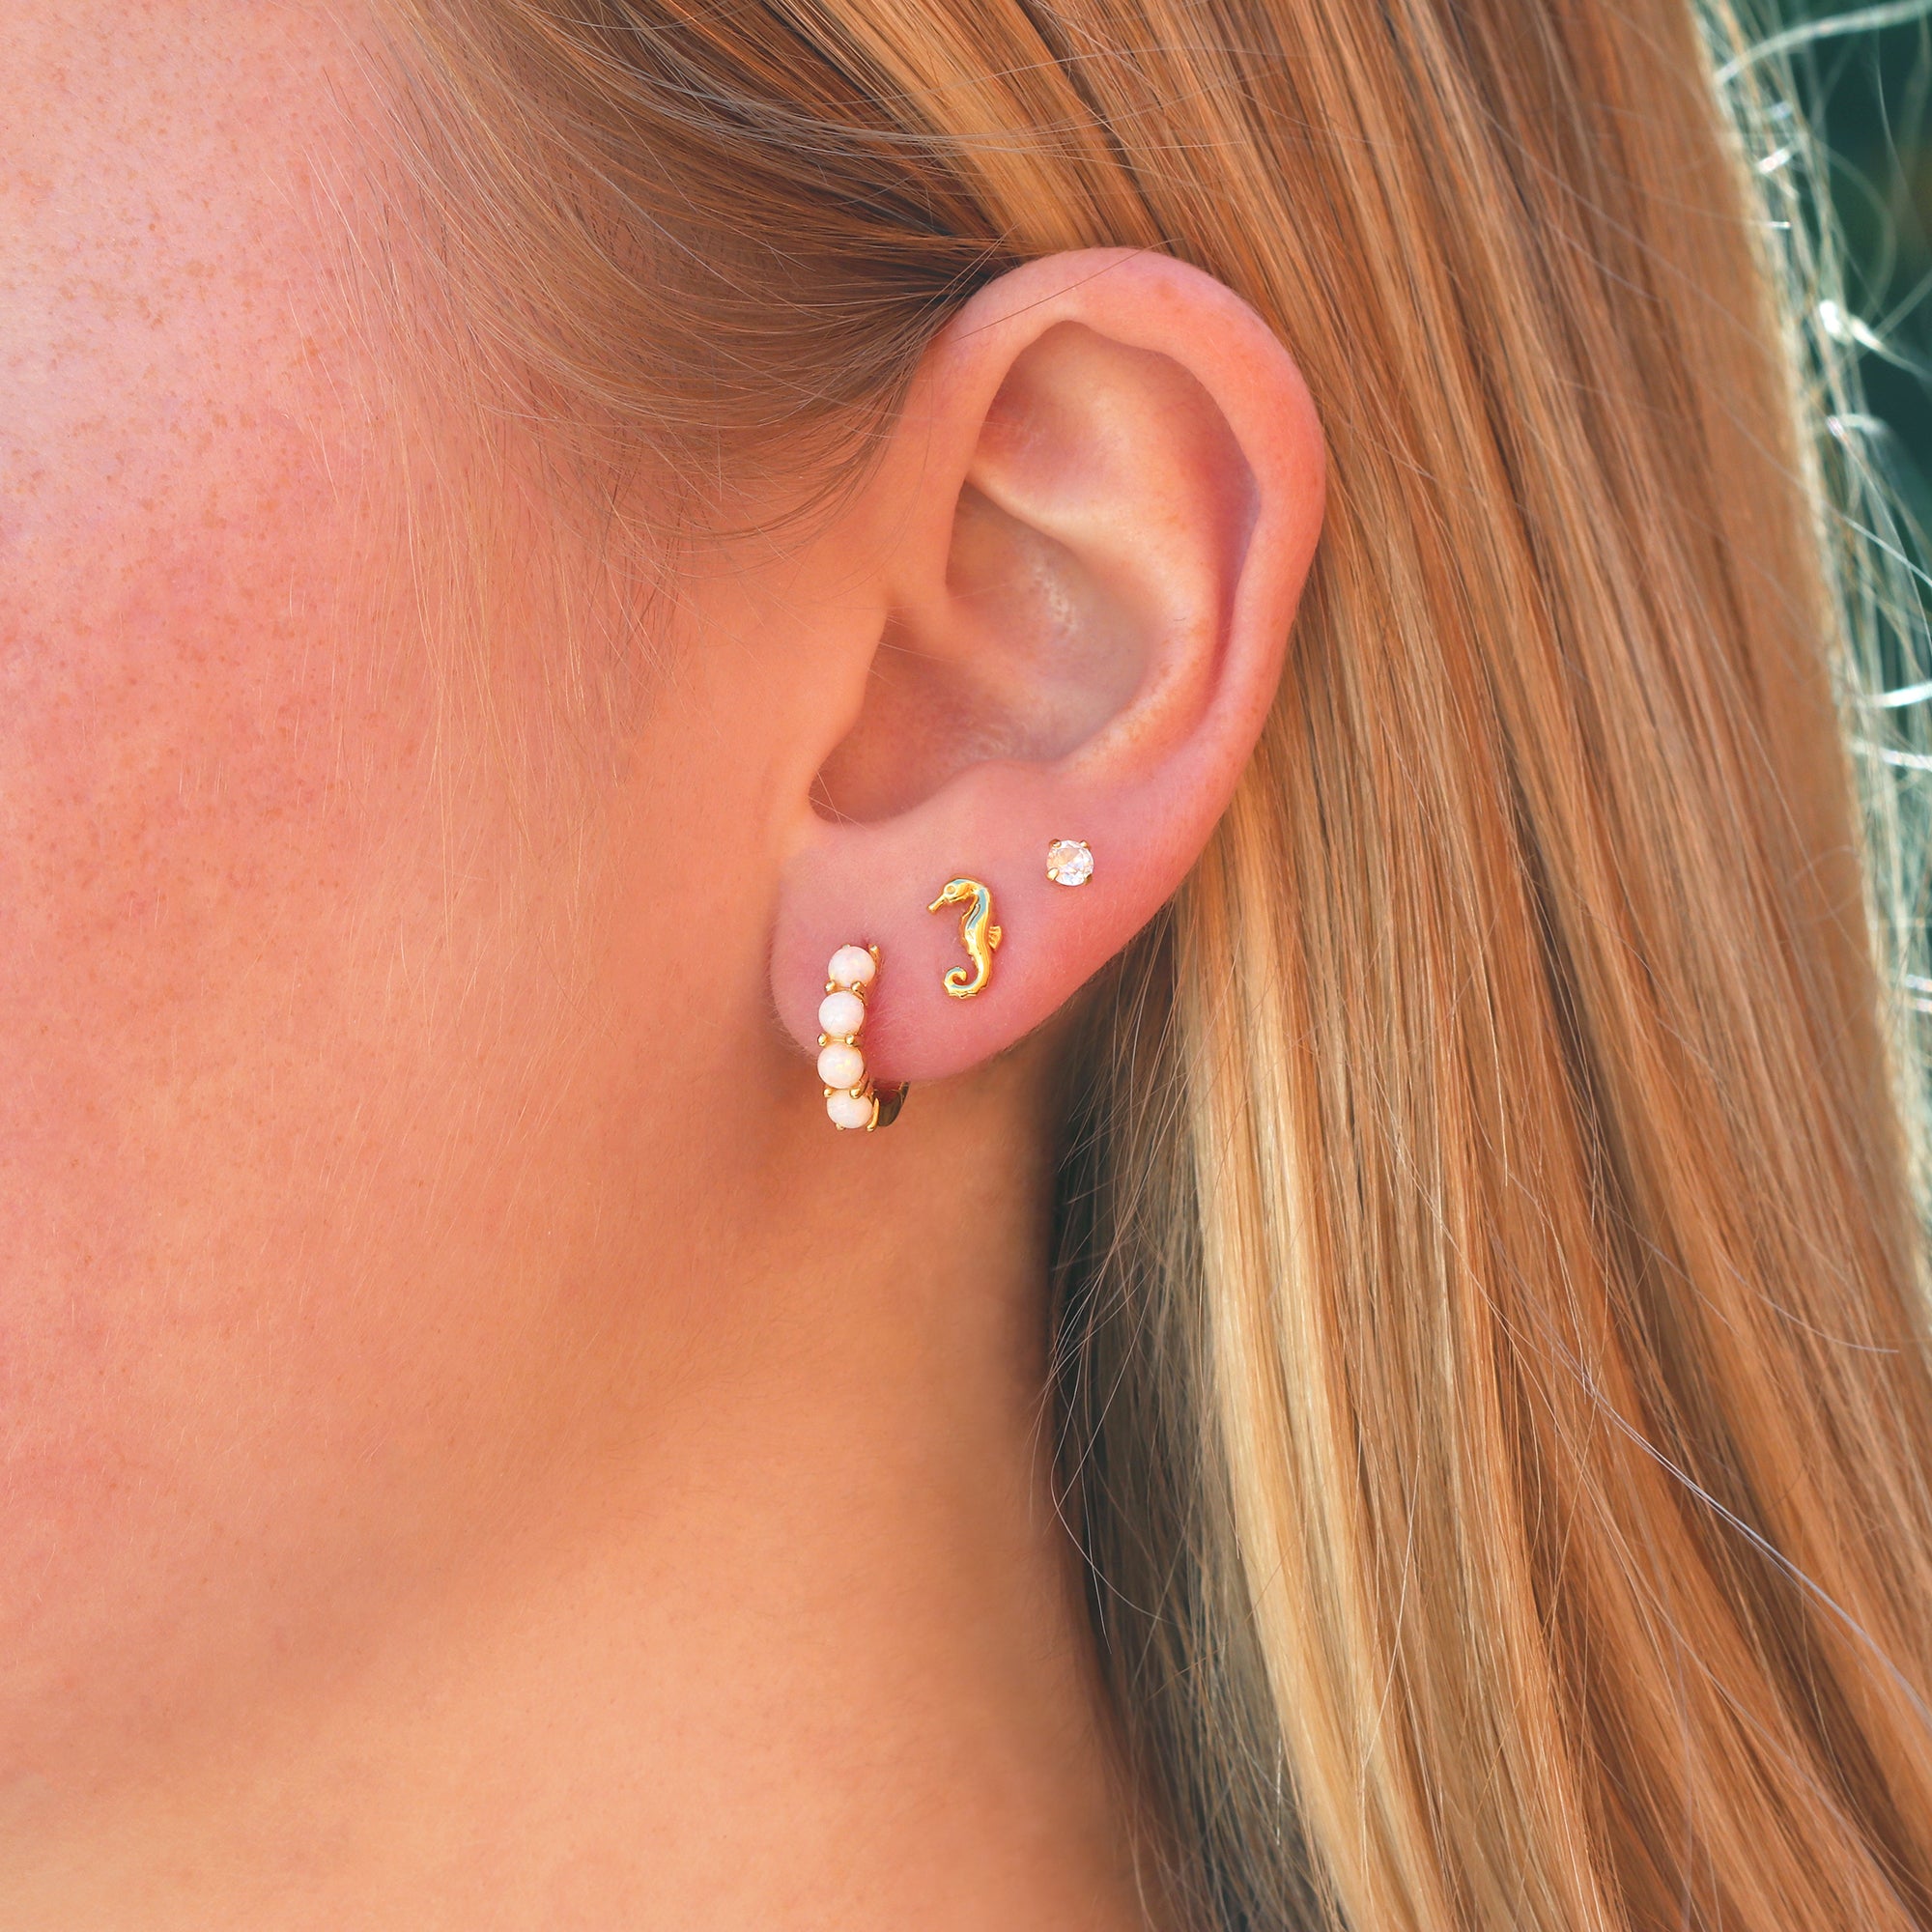 Seahorse Stud Earrings